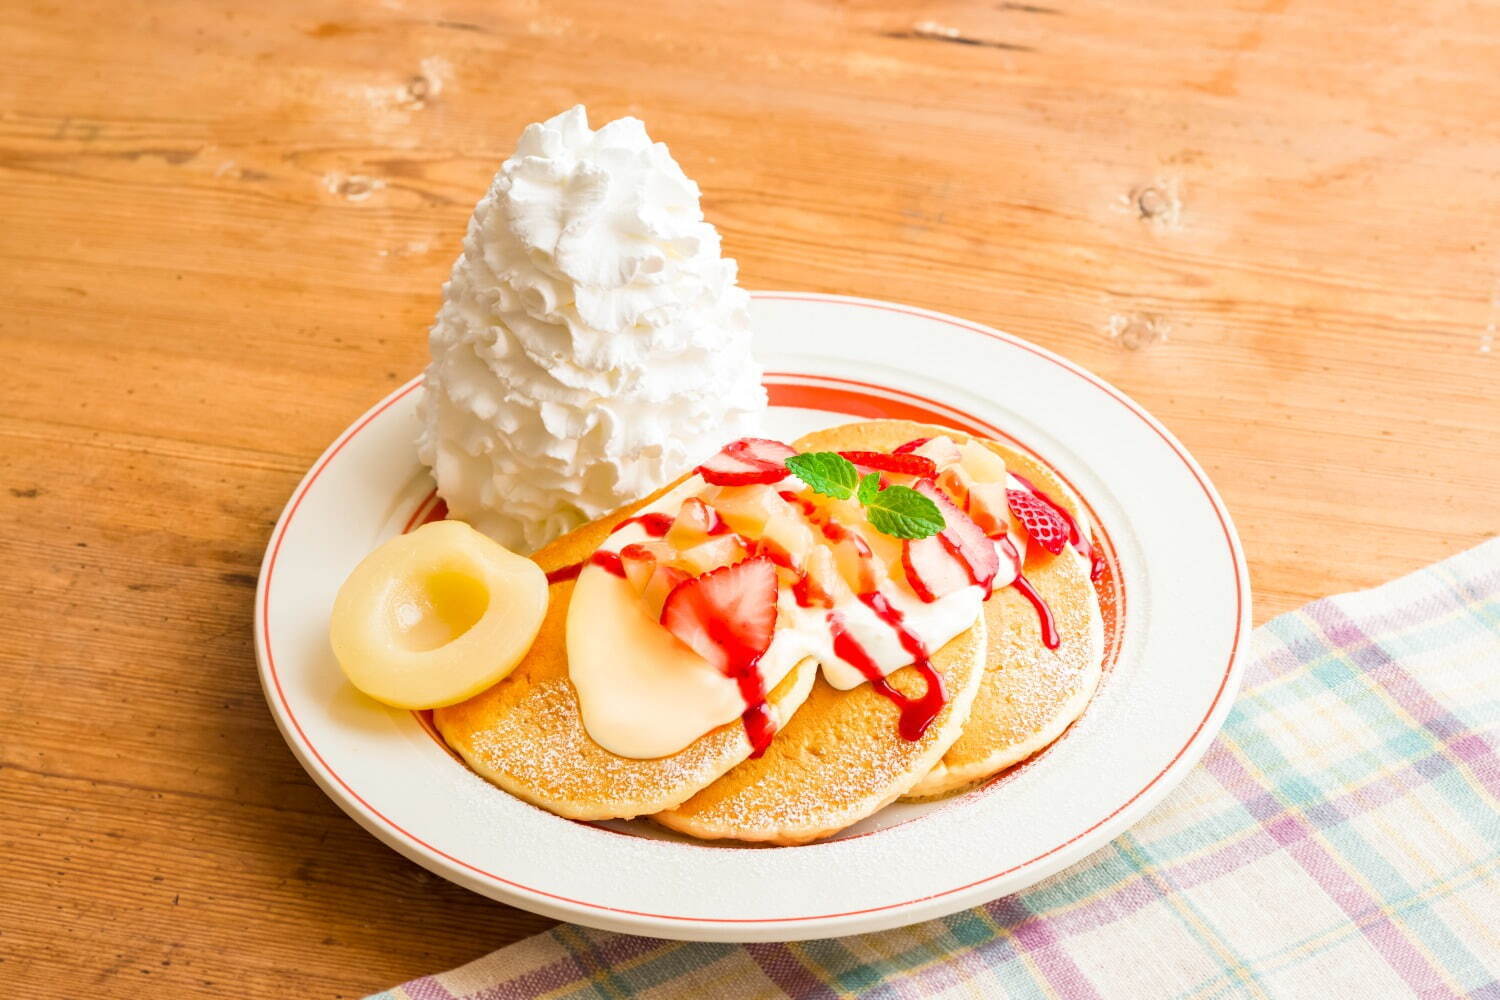 「白桃とイチゴのパンケーキ」1,680円／テイクアウト 1,200円